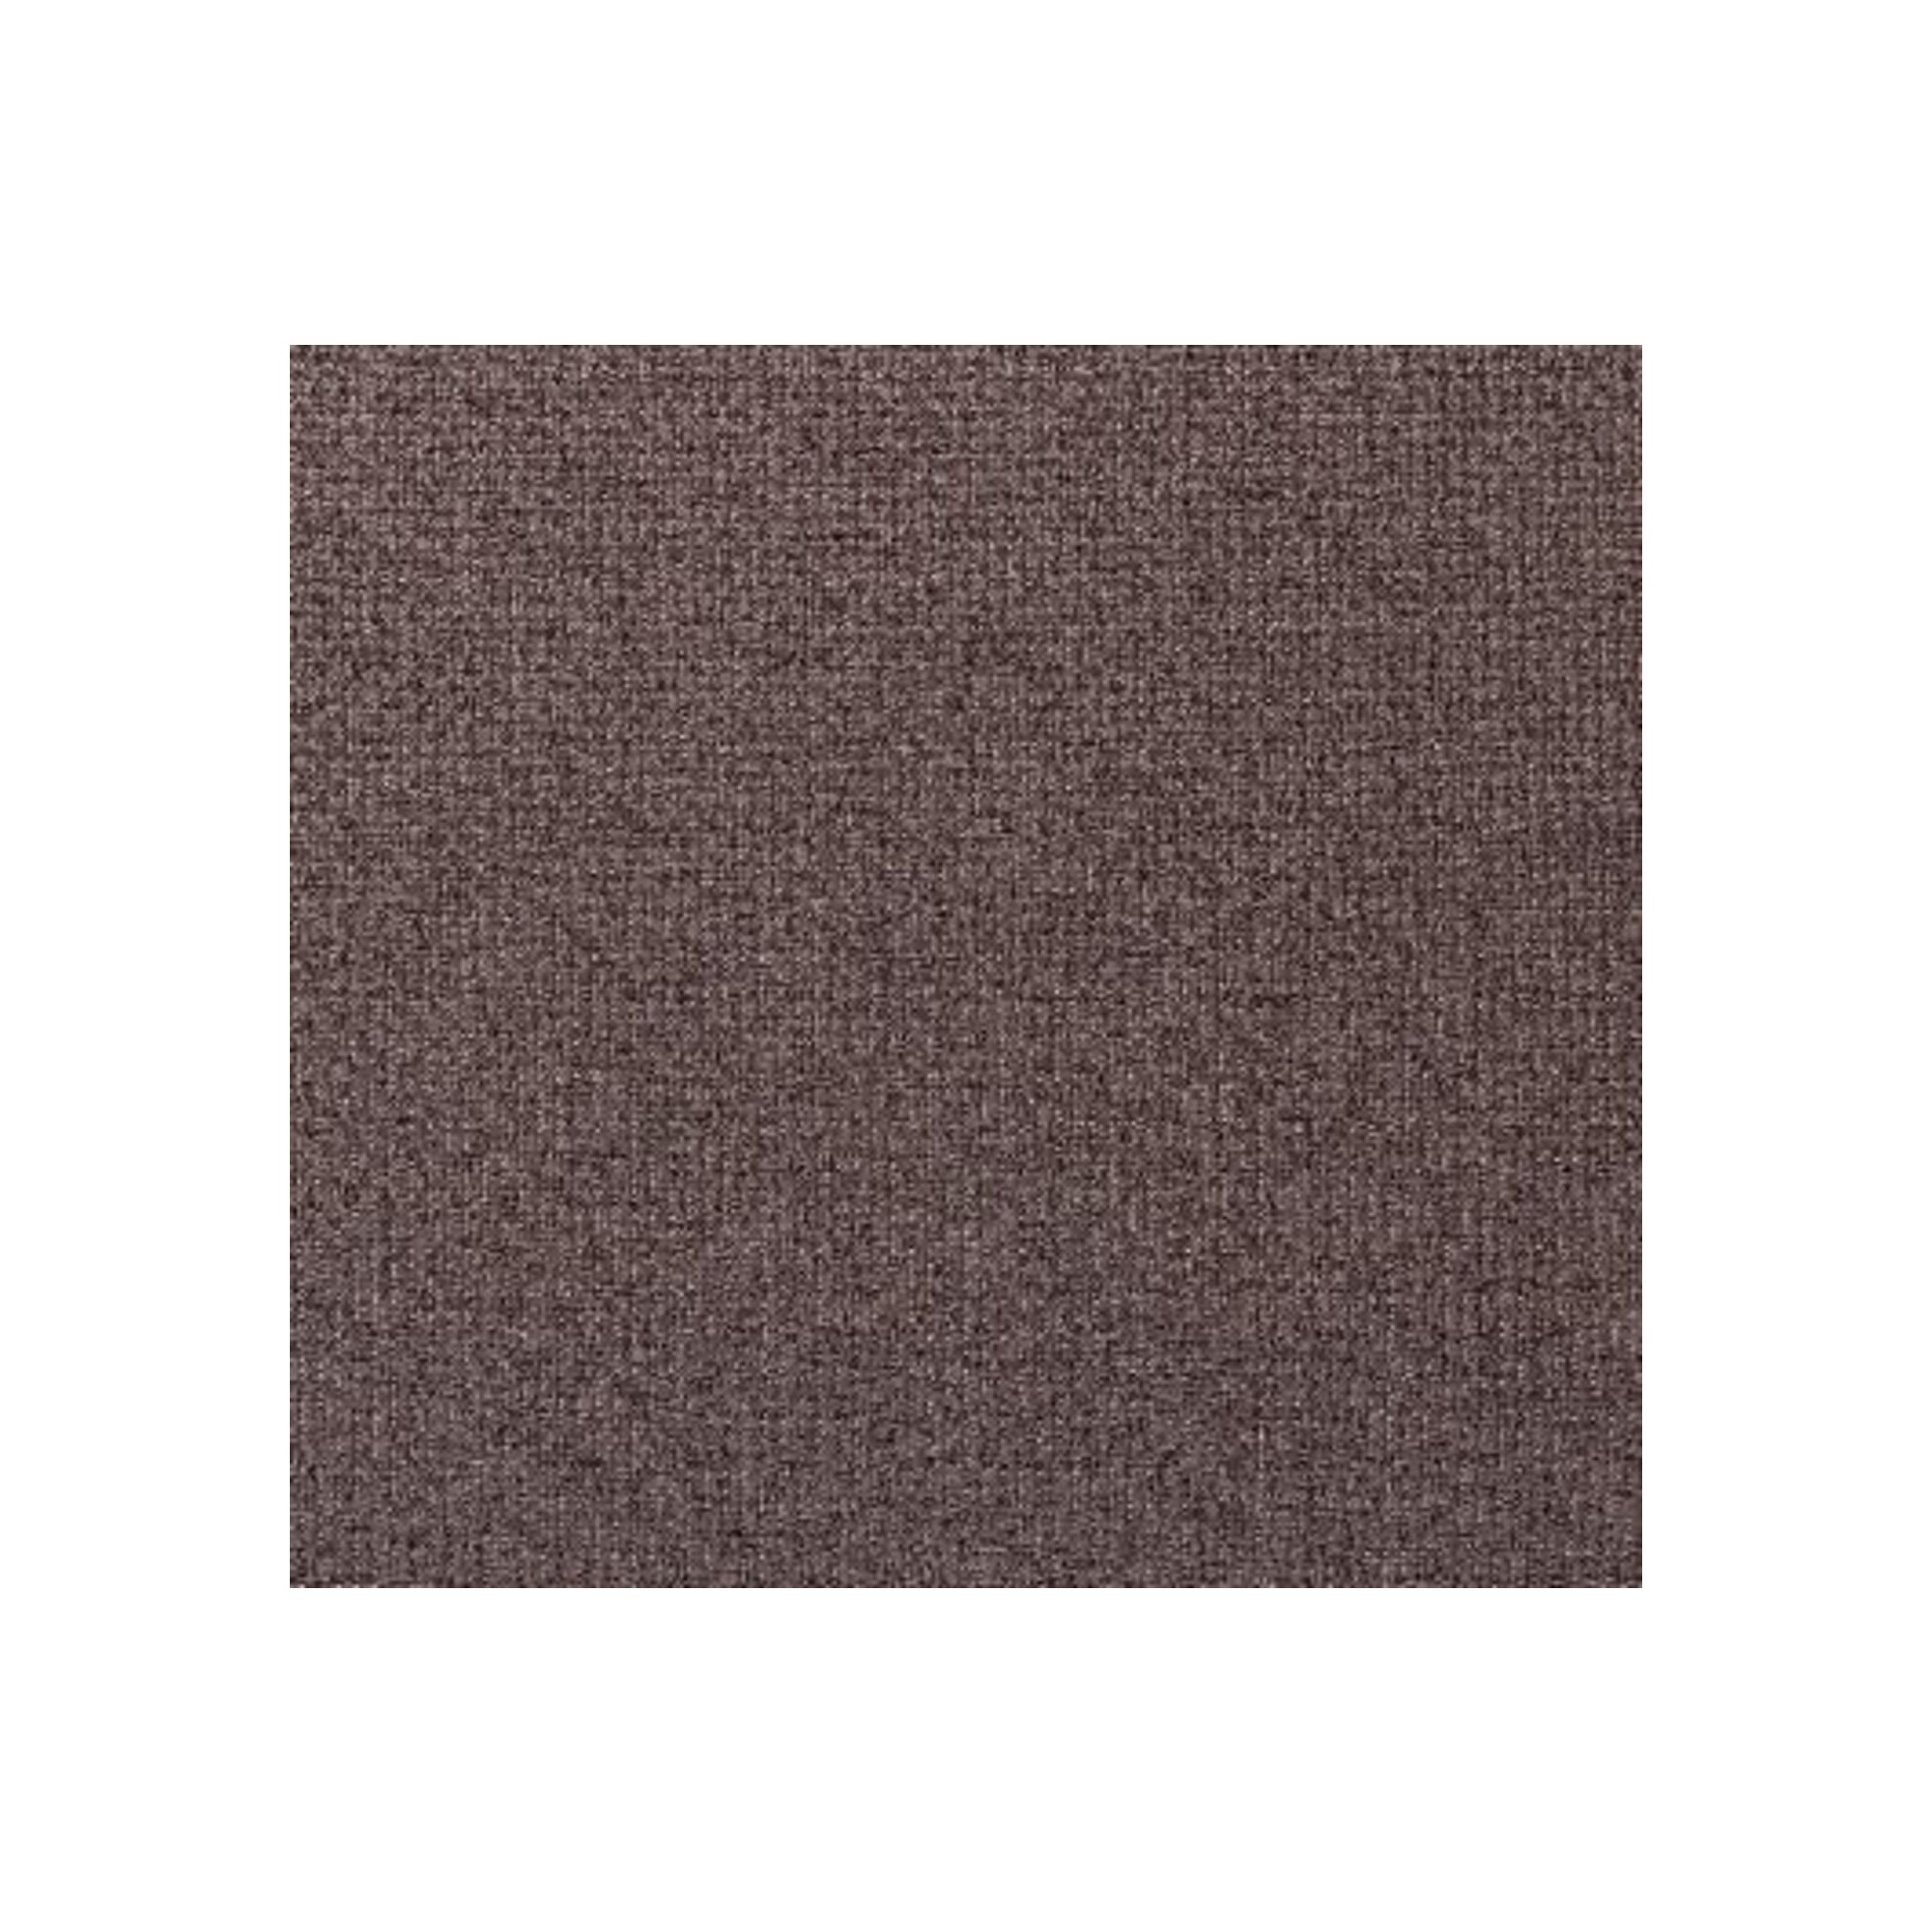 Échantillon de tissu Dolce marron 10x10cm Kare Design